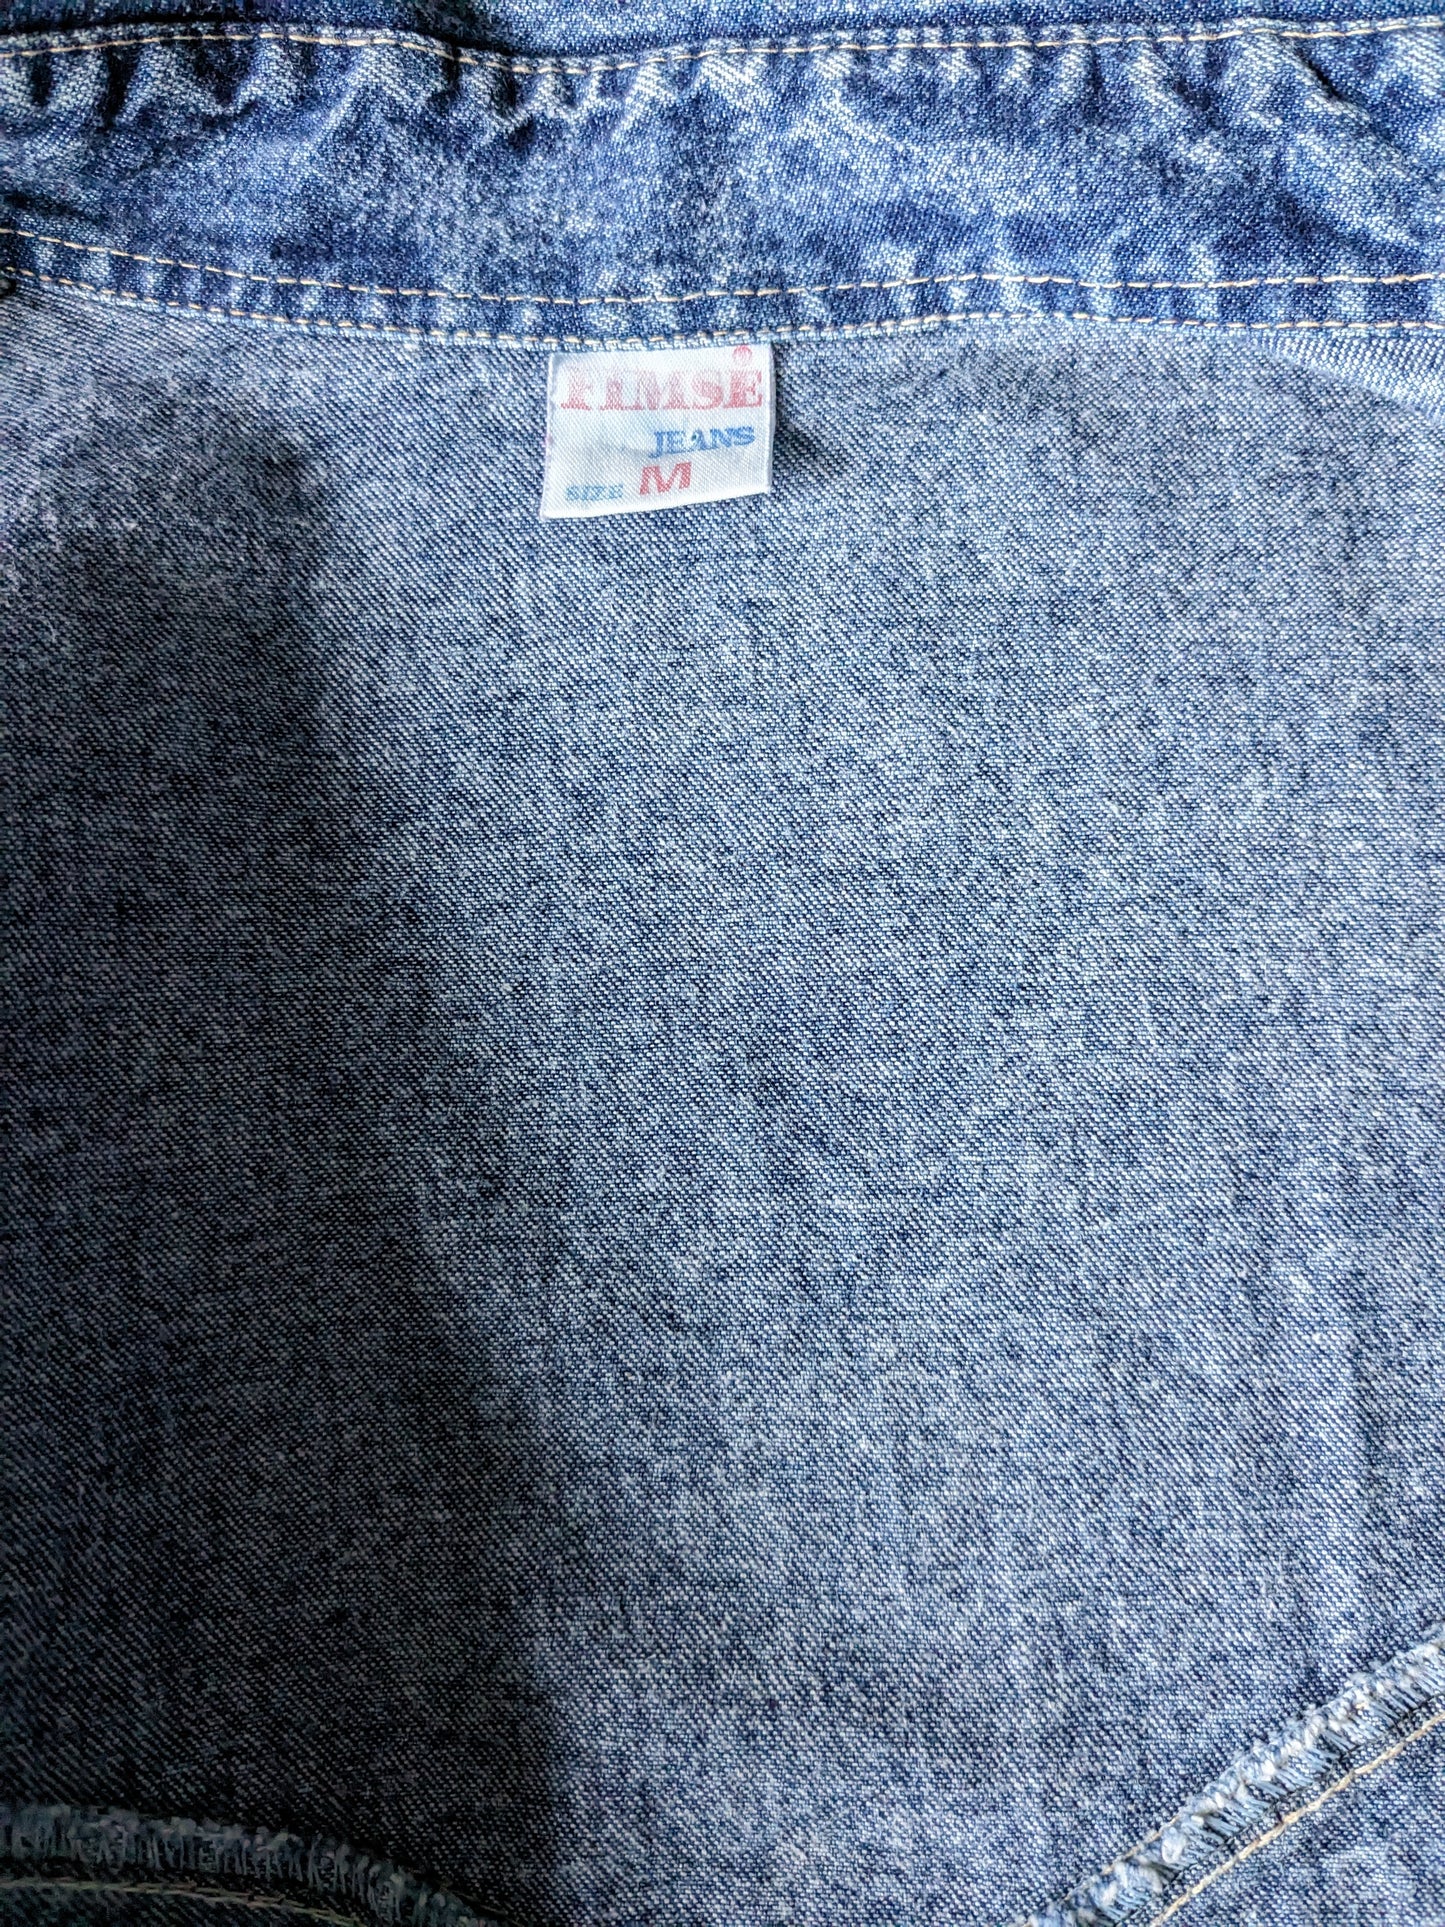 Vintage FIMSE Jeans Camisa Fabrica más gruesa. Azul mezclado. Talla L.